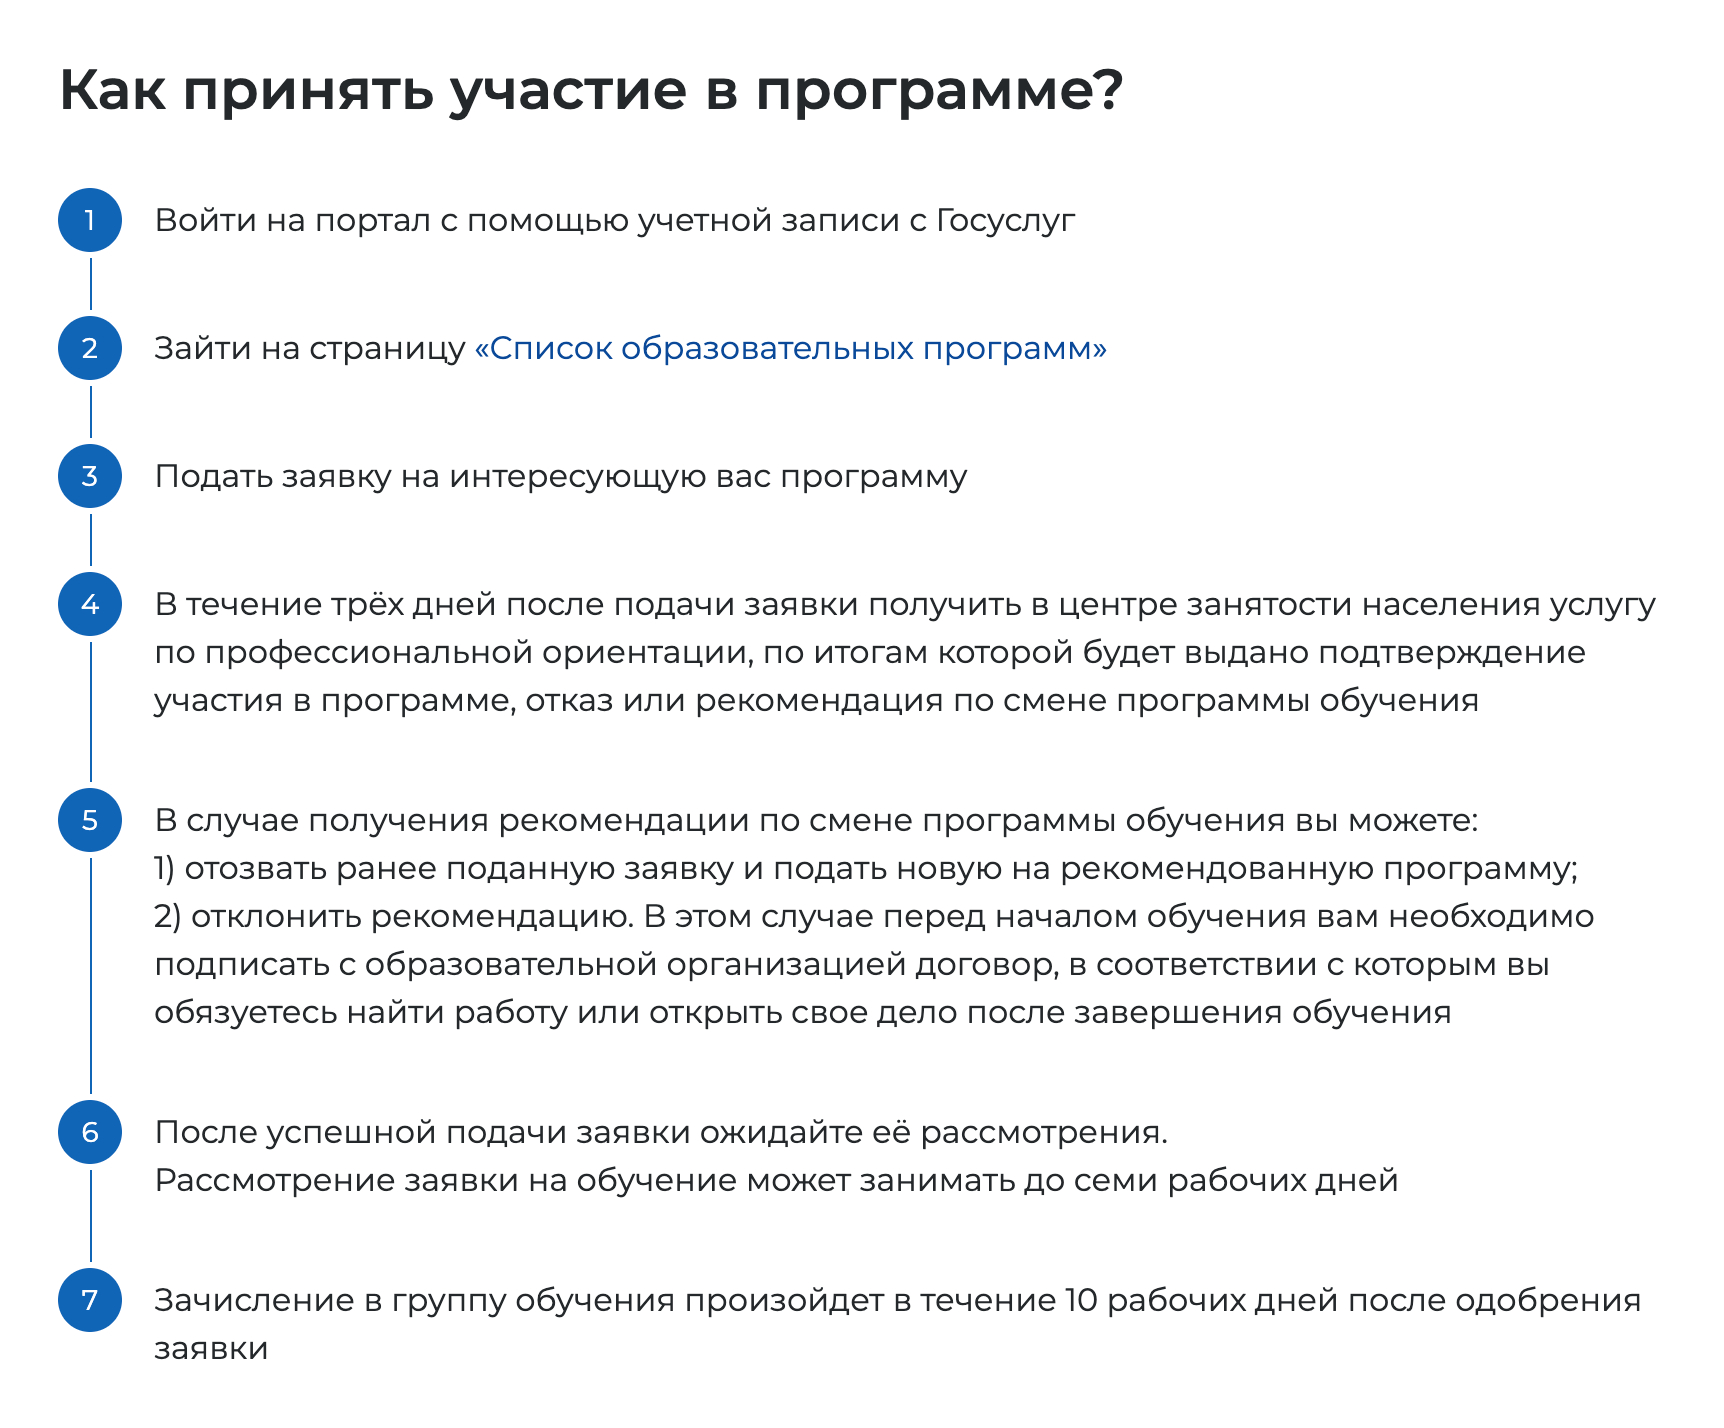 Порядок подачи заявки на портале. Источник: trudvsem.ru